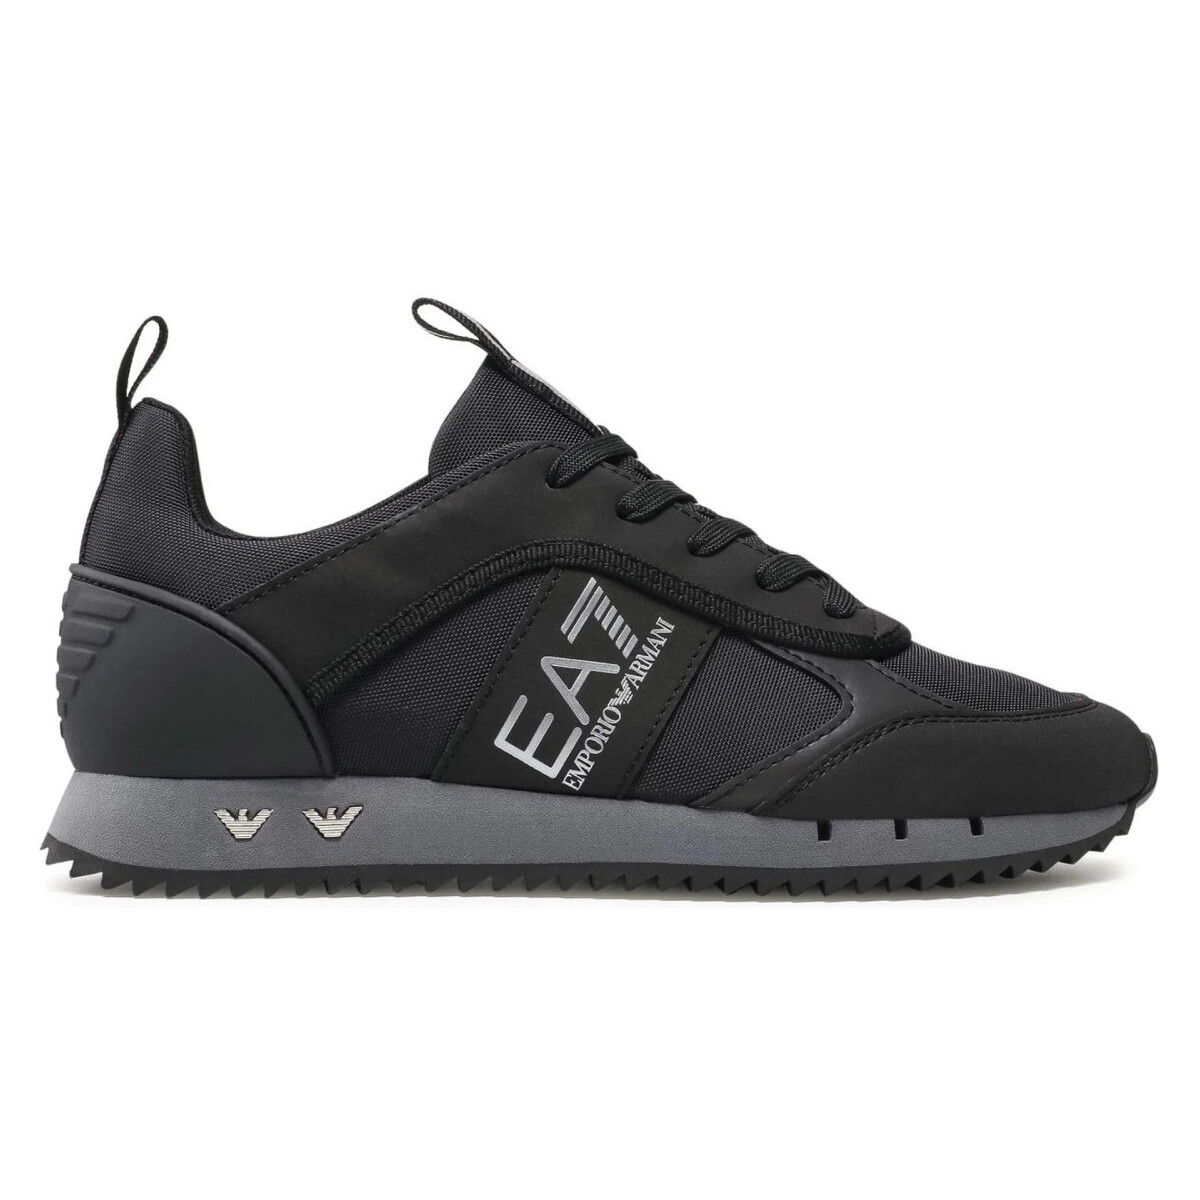 Παπούτσια Άνδρας Sneakers Emporio Armani EA7 X8X027 XK219 Black